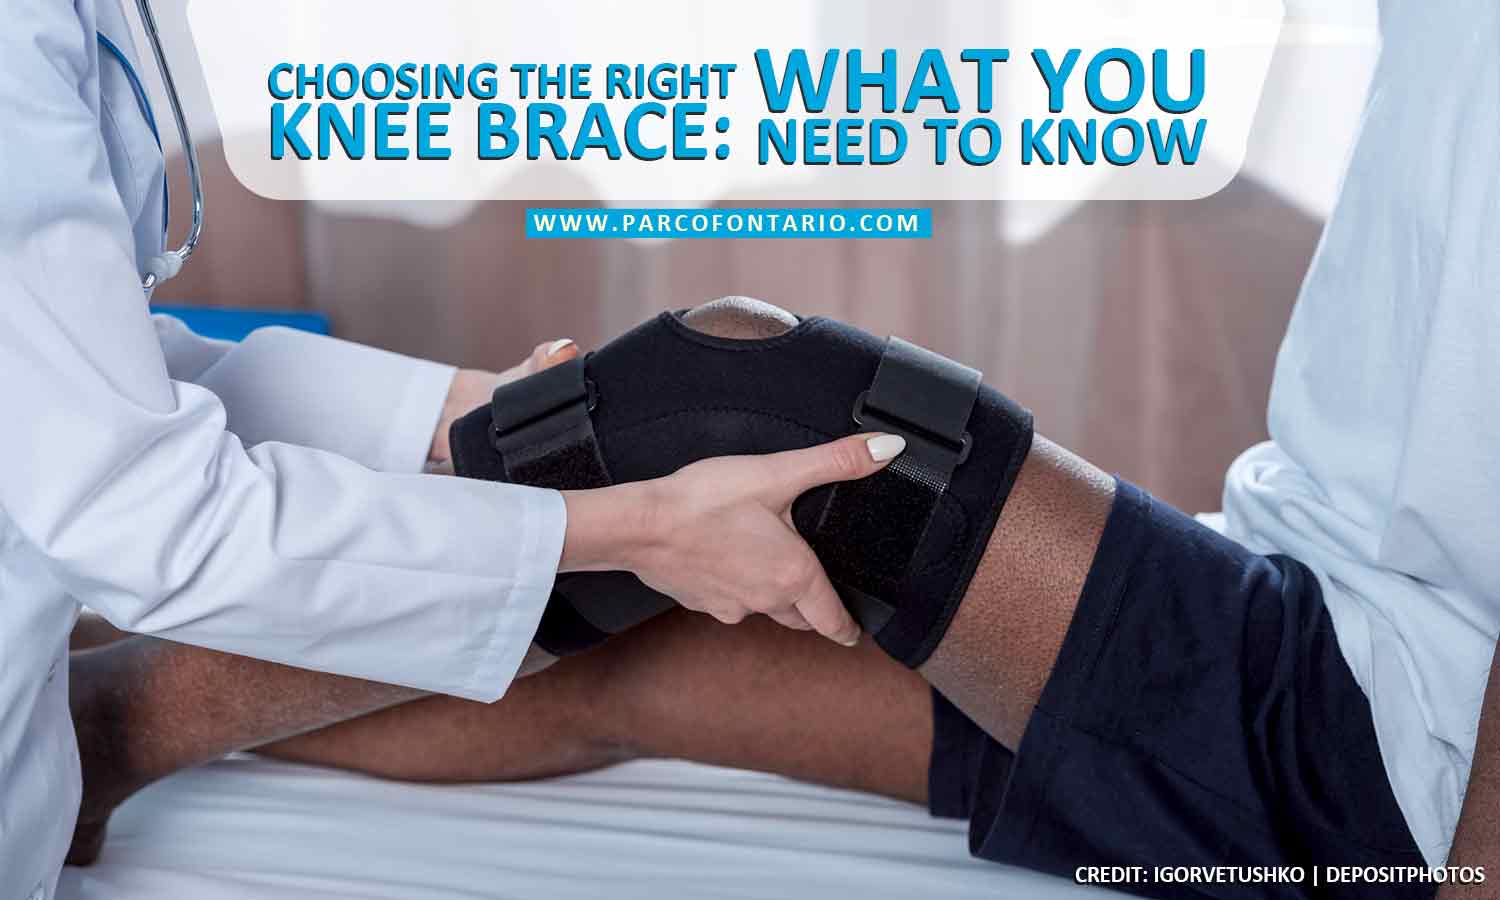 The Best Knee Brace for Patellar Tendonitis